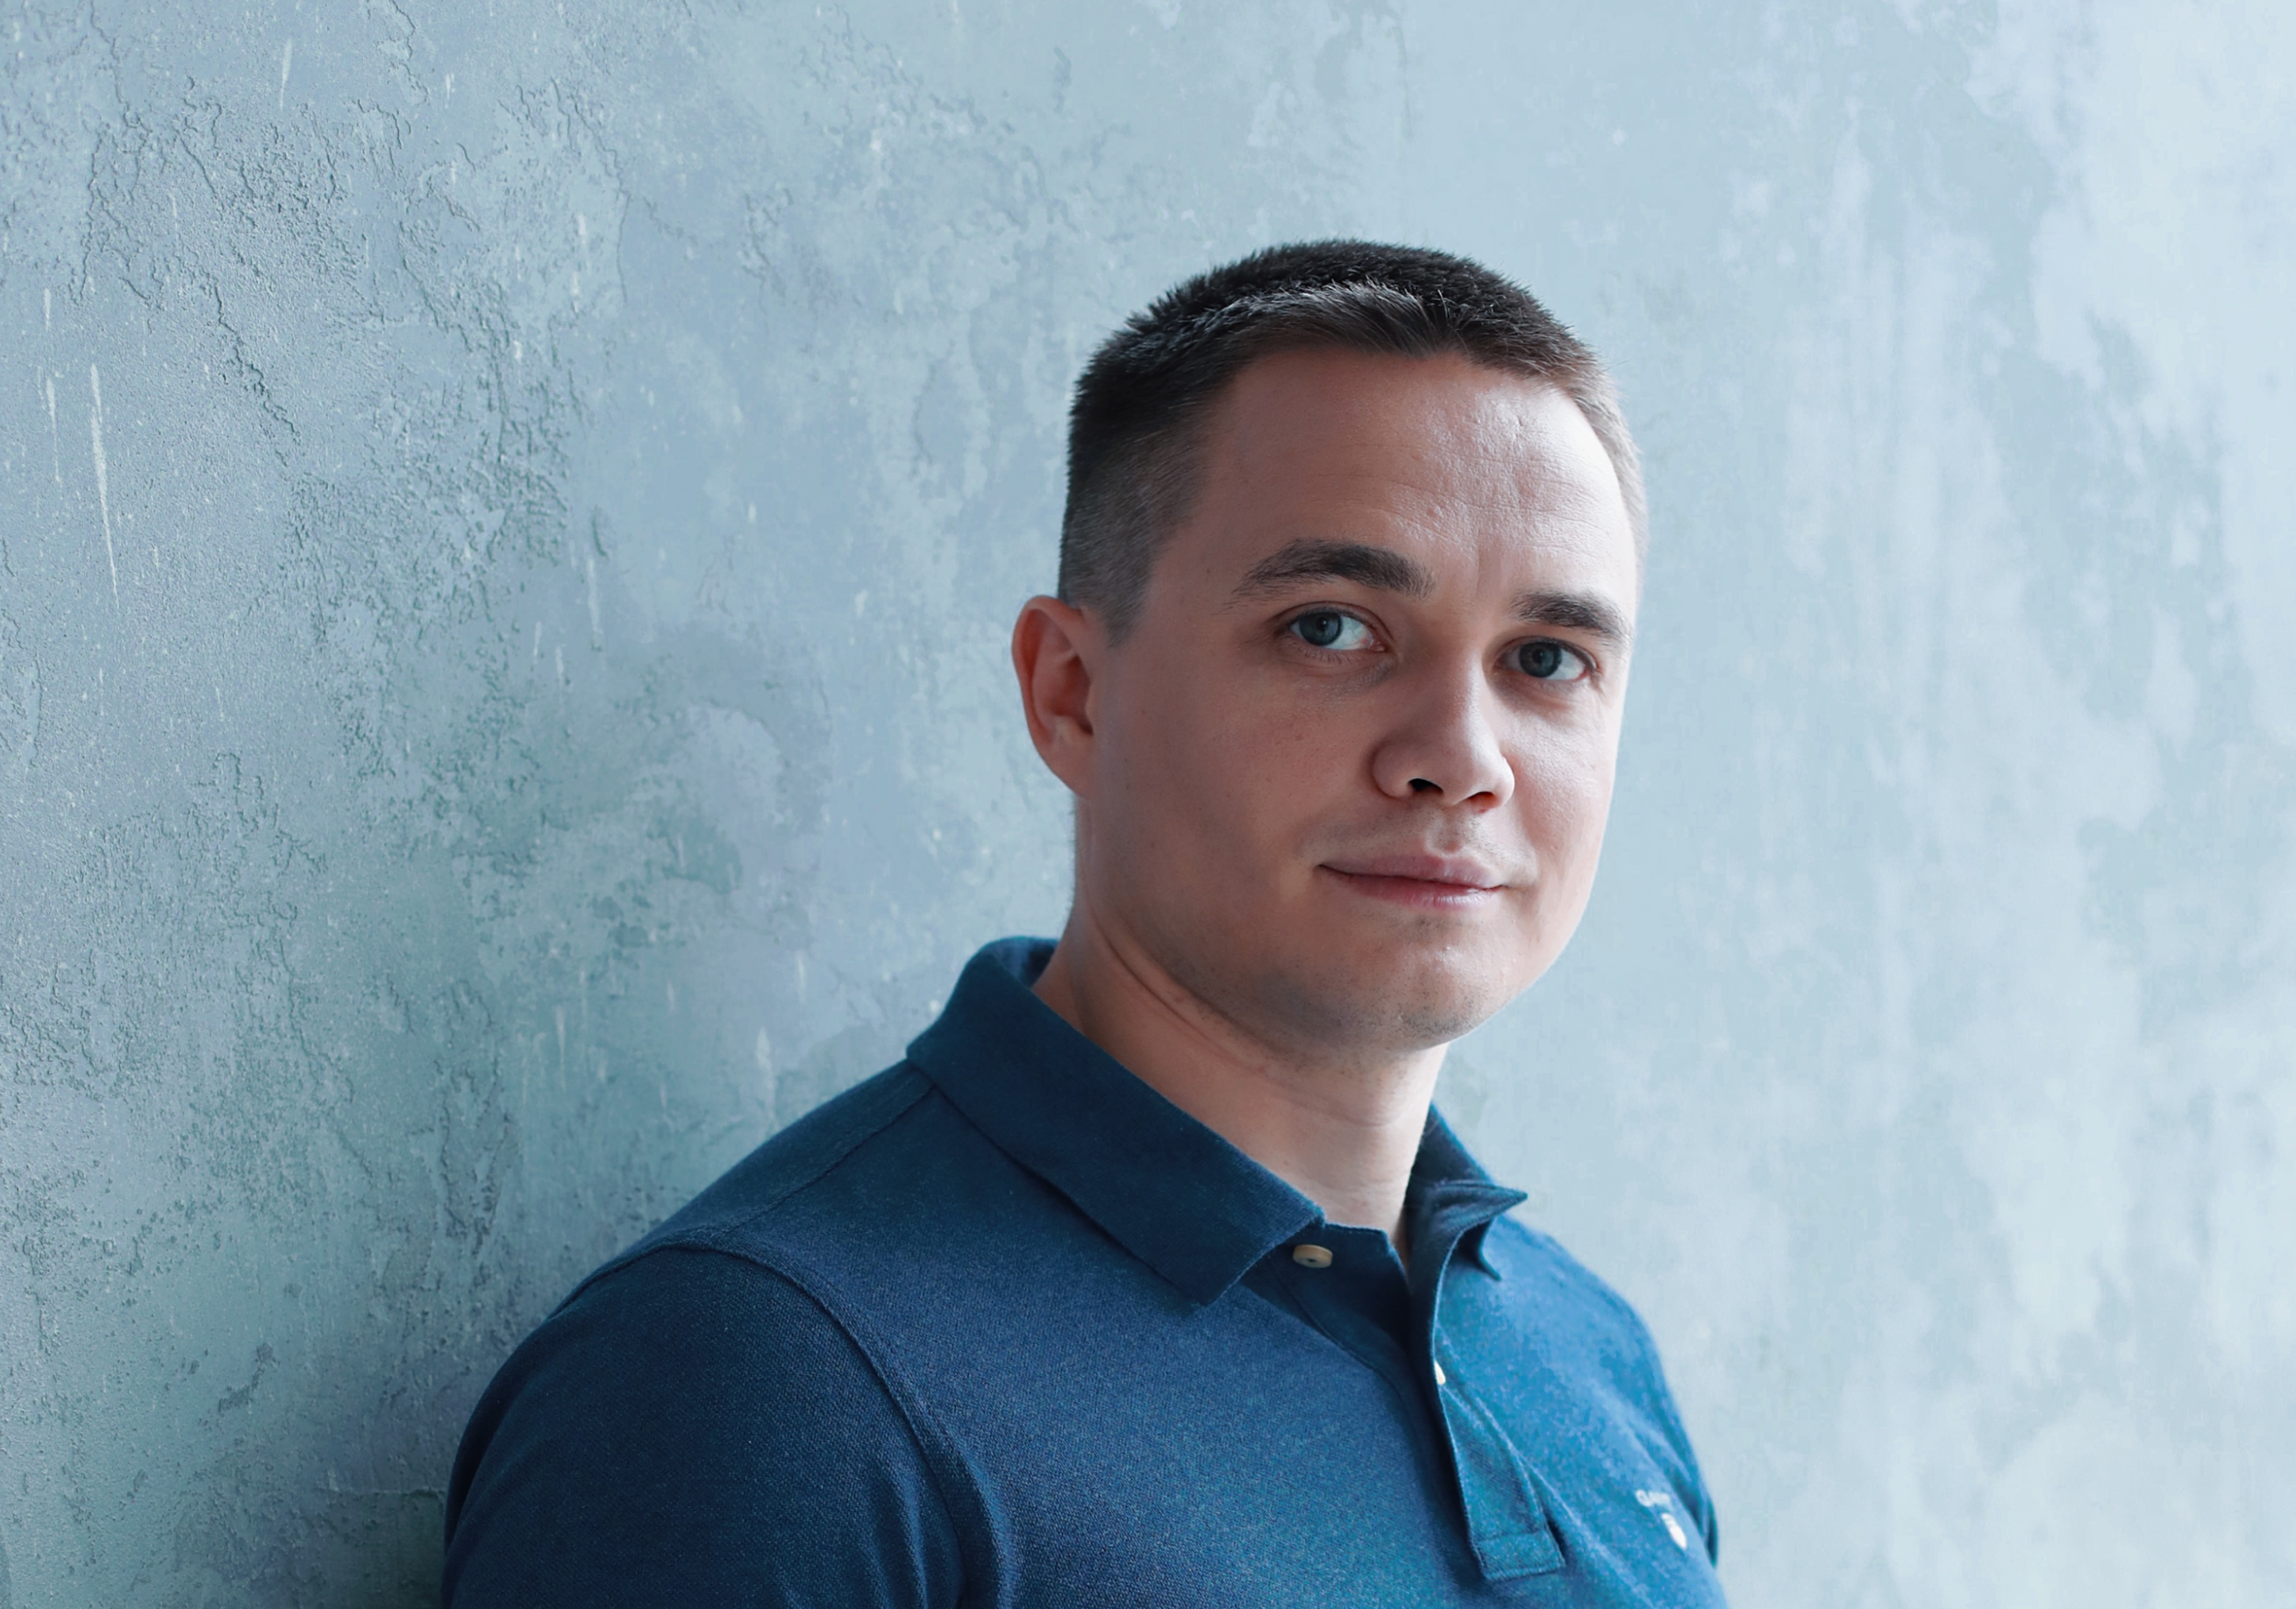 Интервью Эксперт РА. Александр Карпенко, гендиректор «Флит Финанс»: «Мы планируем расти быстрее рынка»